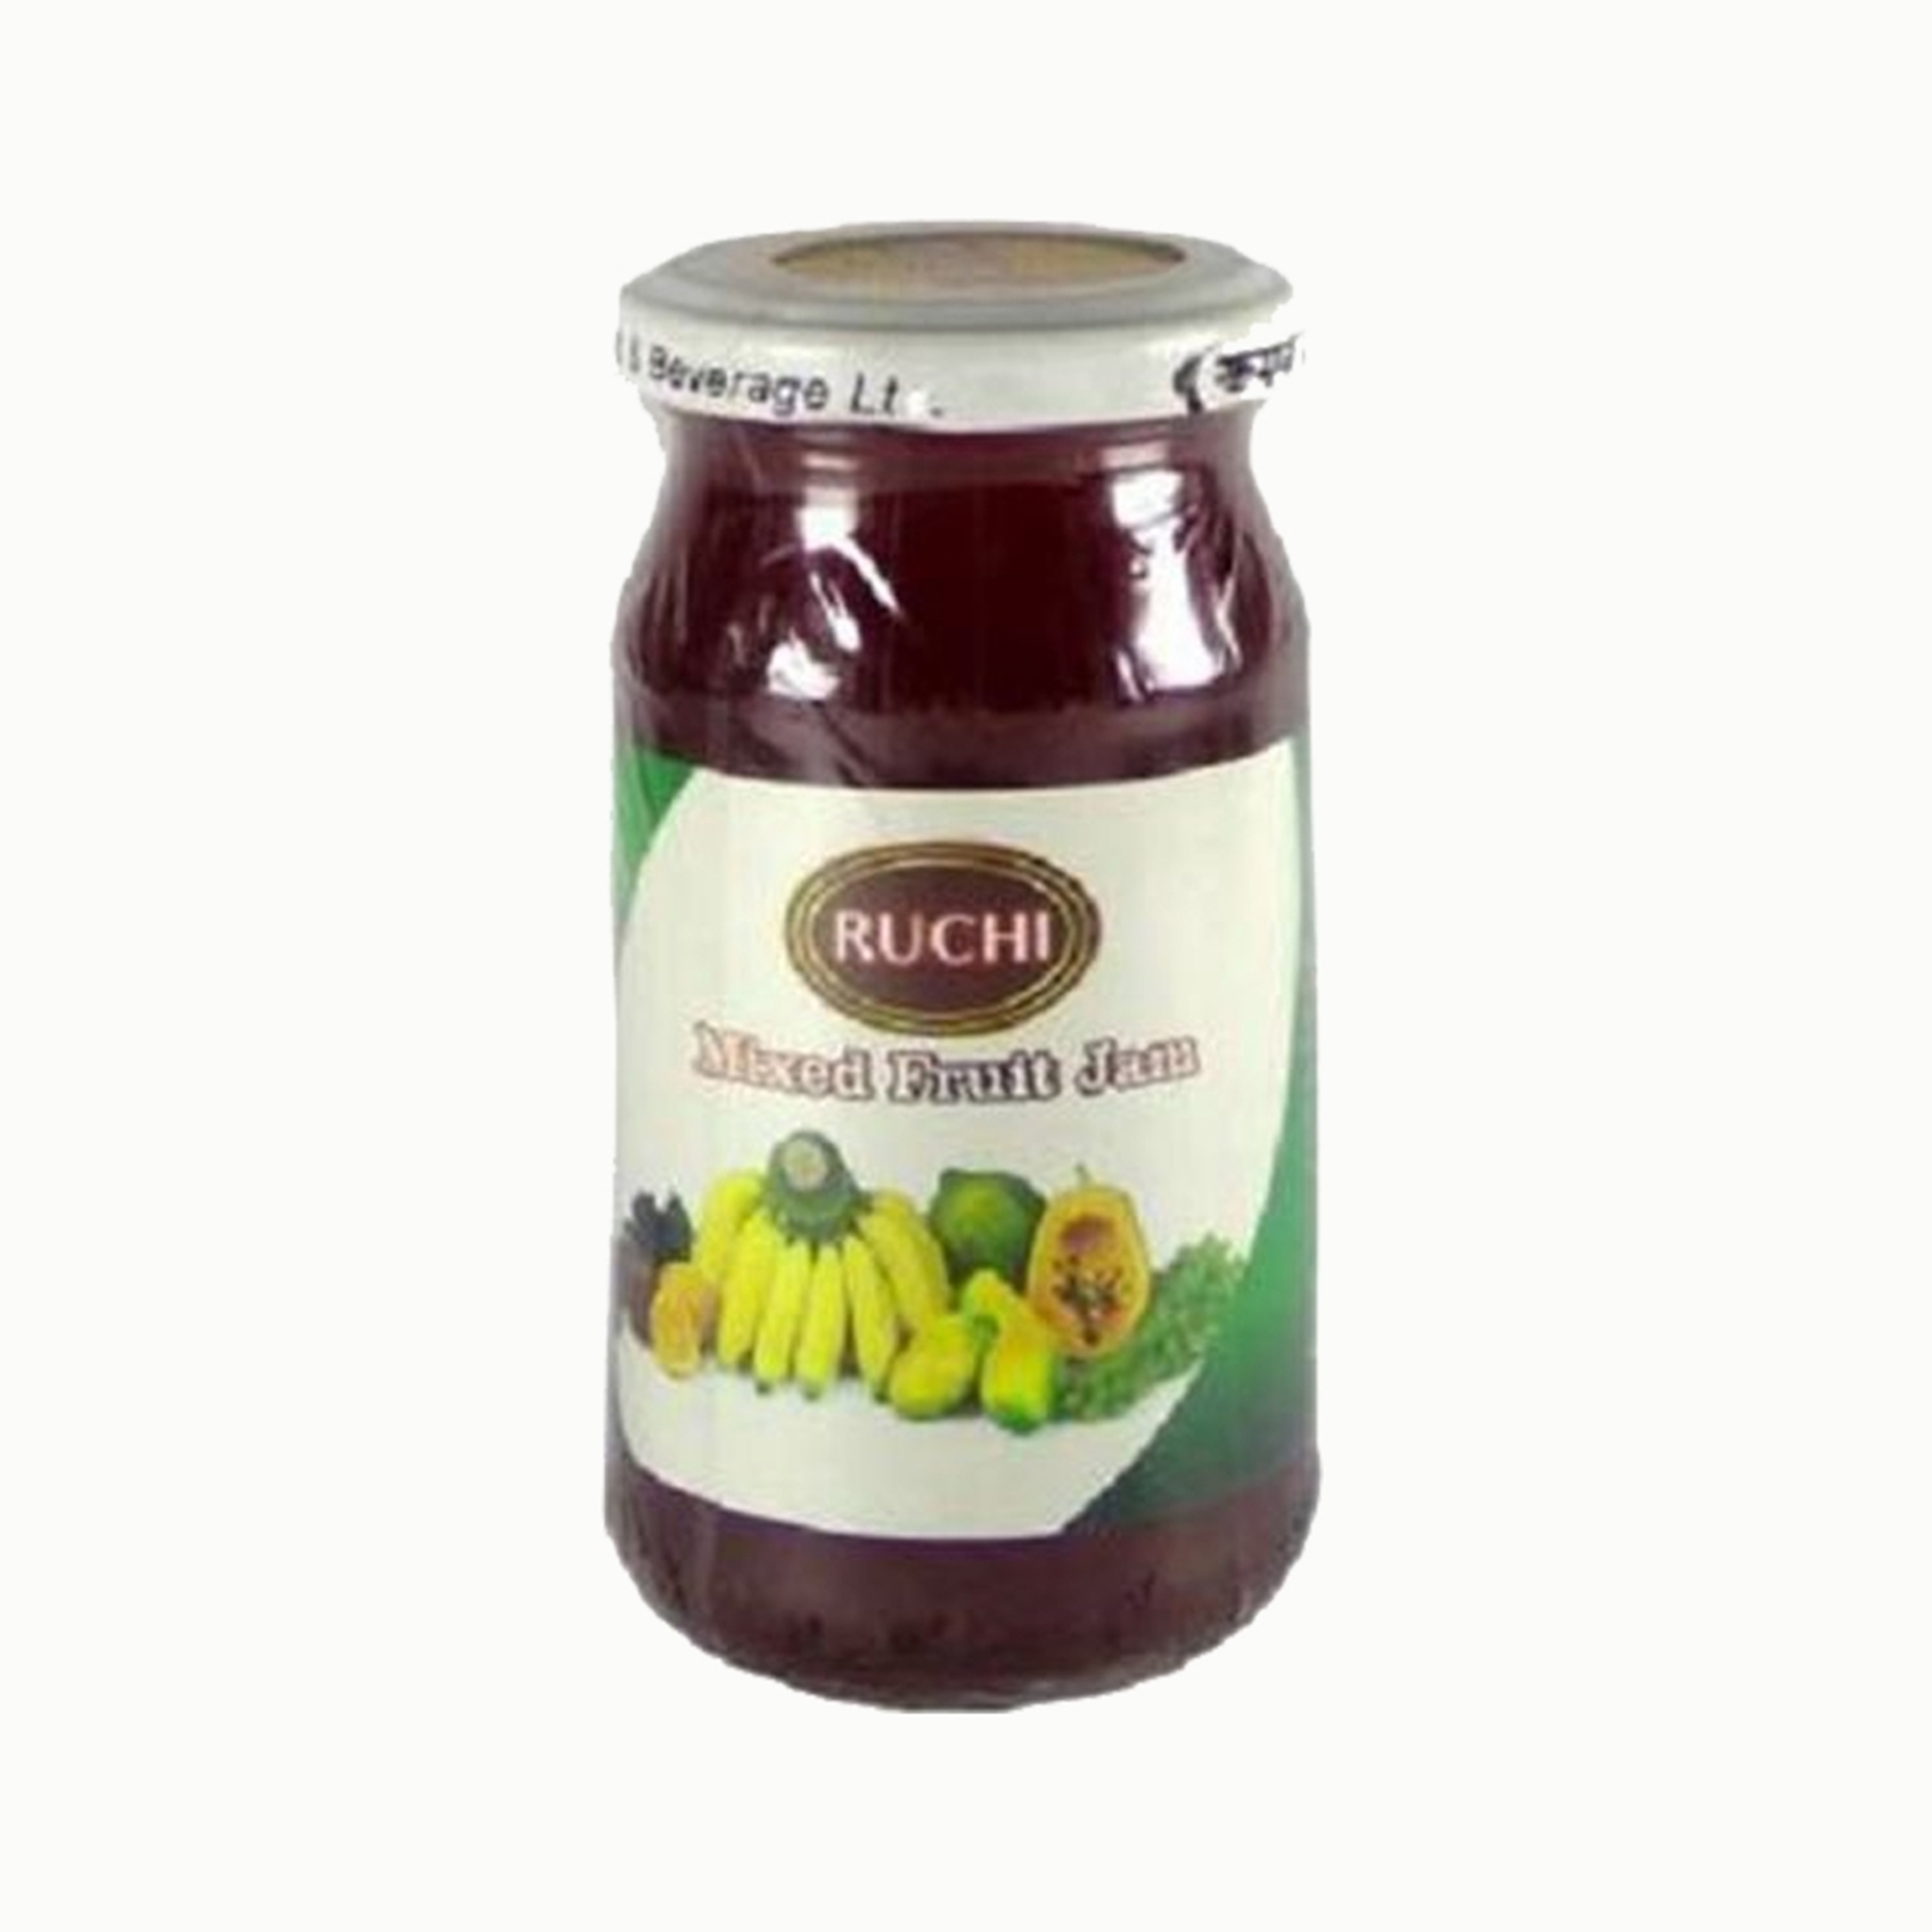 Ruchi Mixed Fruit Jam 250g